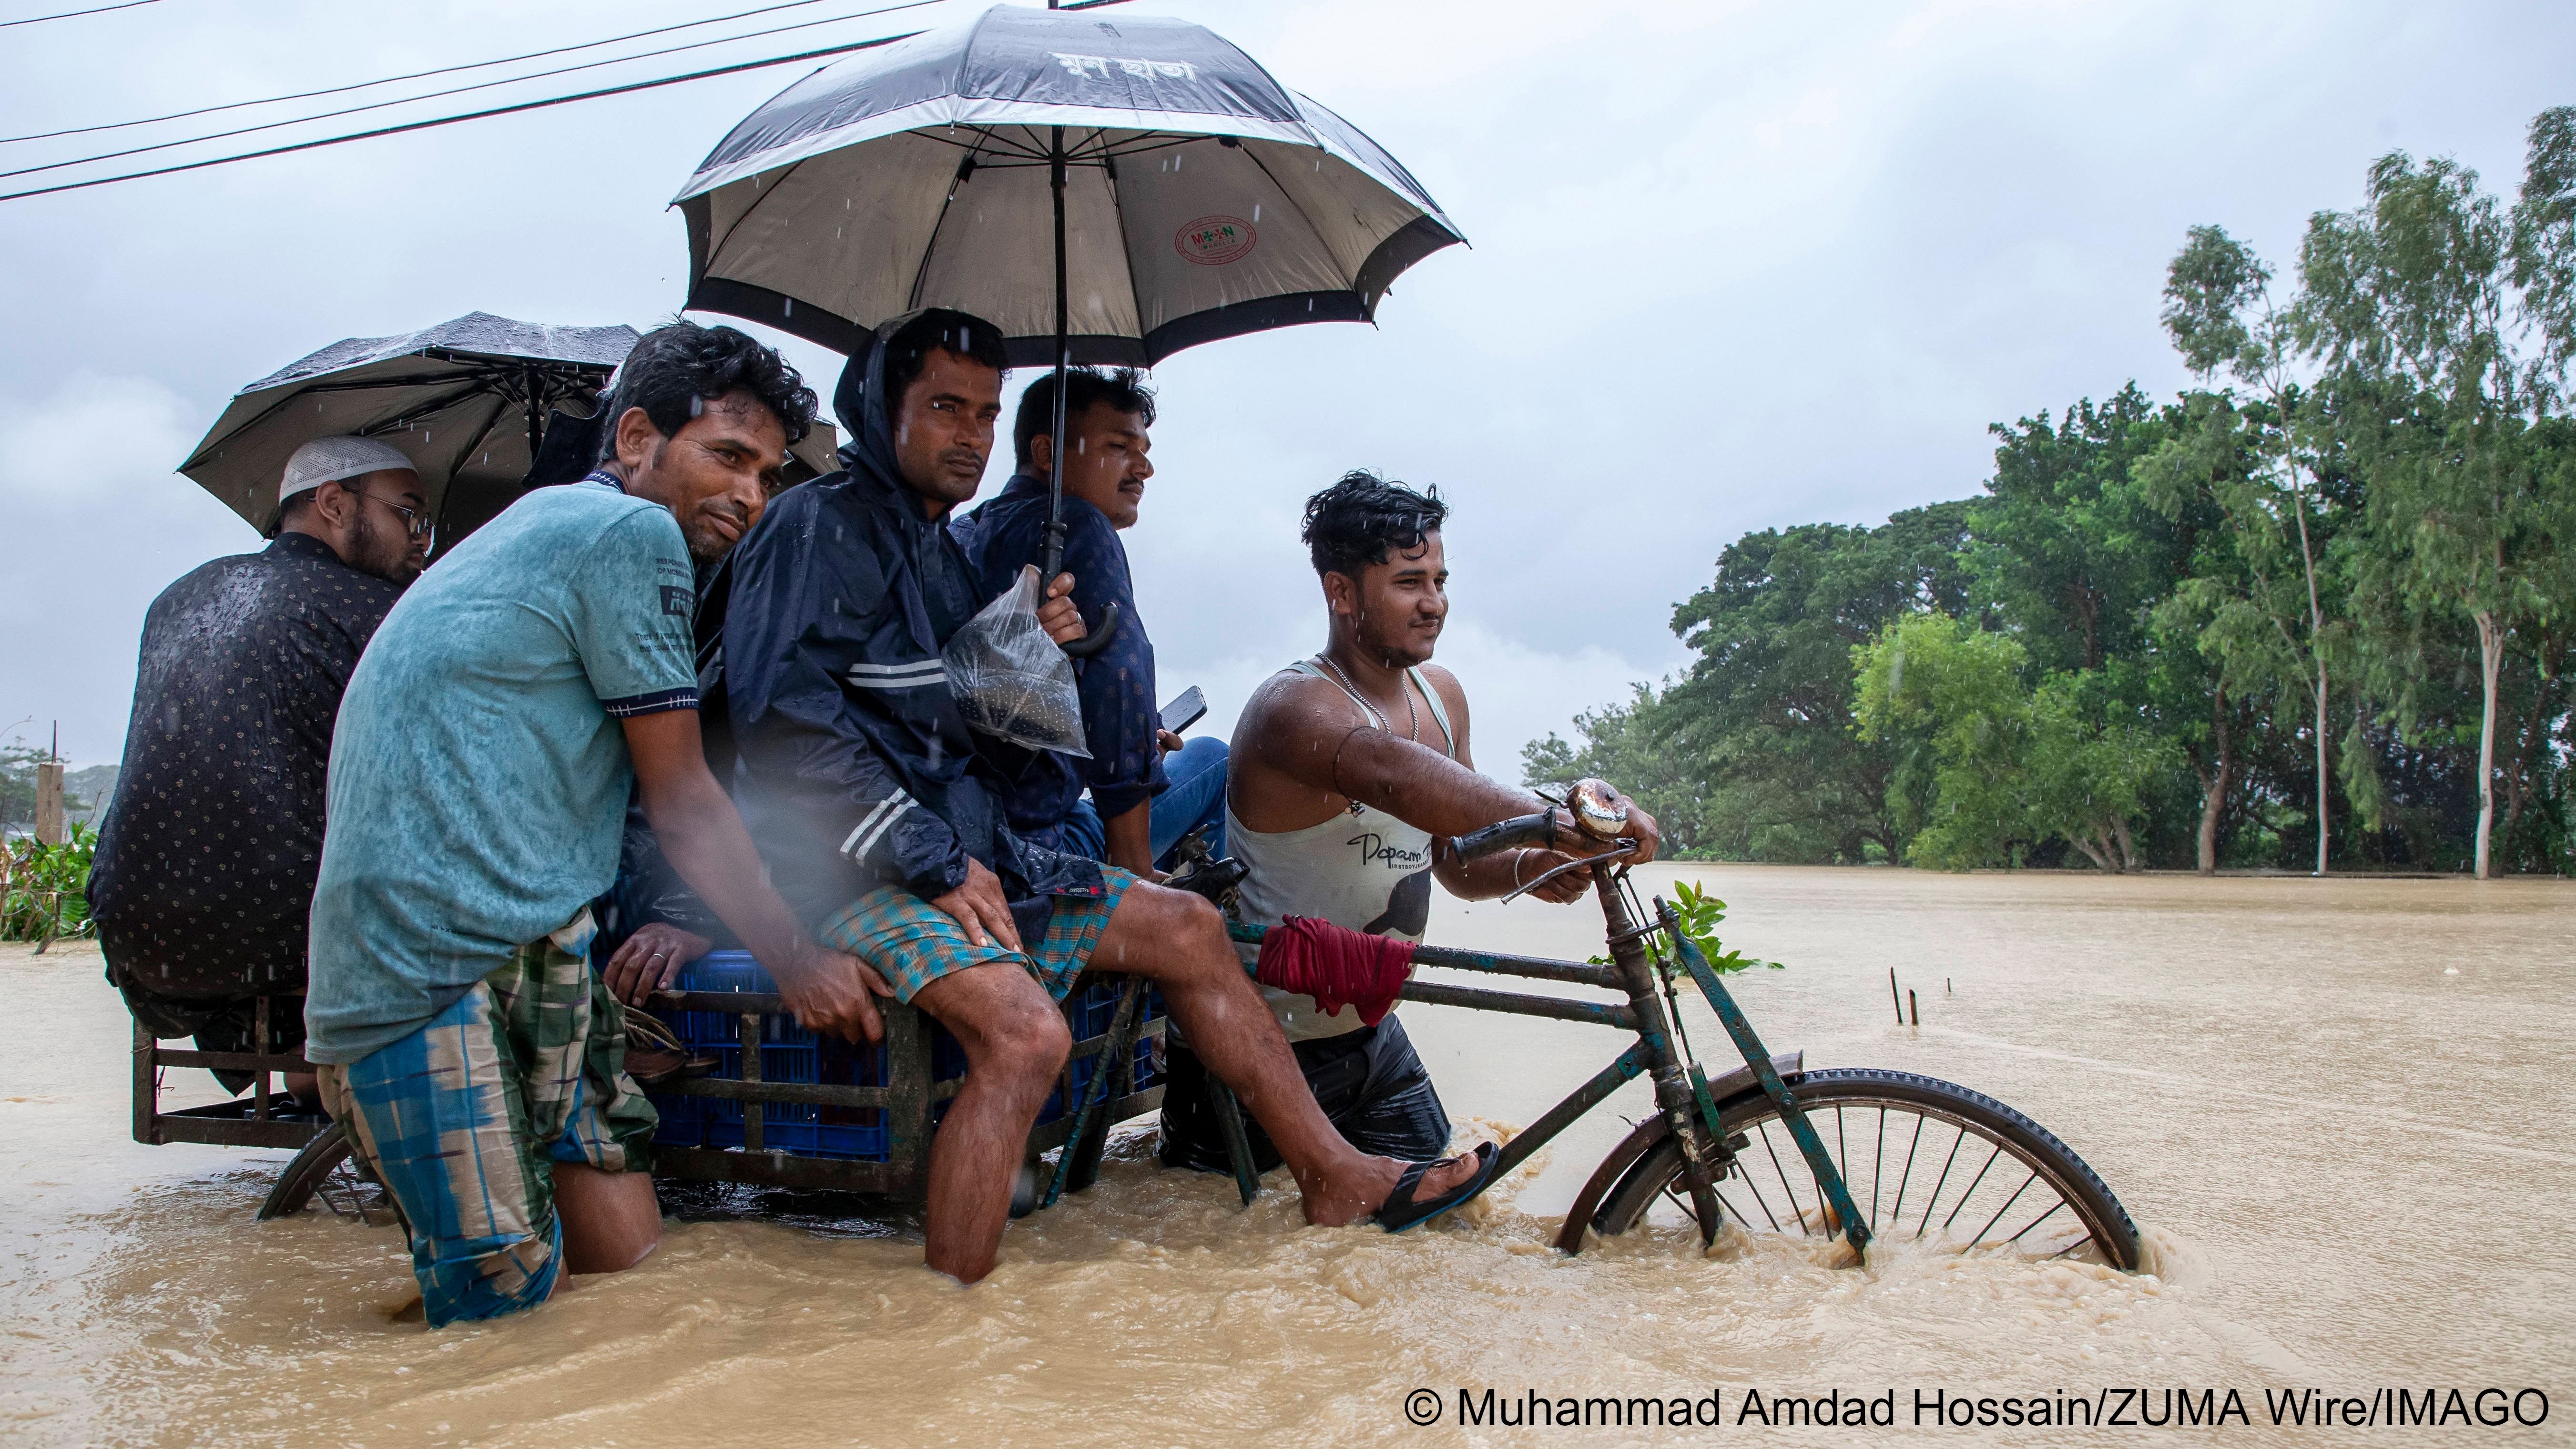 Chittagong in Bangladesch ist eine der zehn am schnellsten sinkenden Küstenstädte der Welt. Viele Menschen sind in diese Stadt gezogen, weil sie vor Klimakatastrophen in anderen Gegenden des Landes geflohen sind. Da Chittagong mehrere Stunden am Tag unter Wasser steht, ist es wahrscheinlich, dass sie bald wieder wegmüssen.